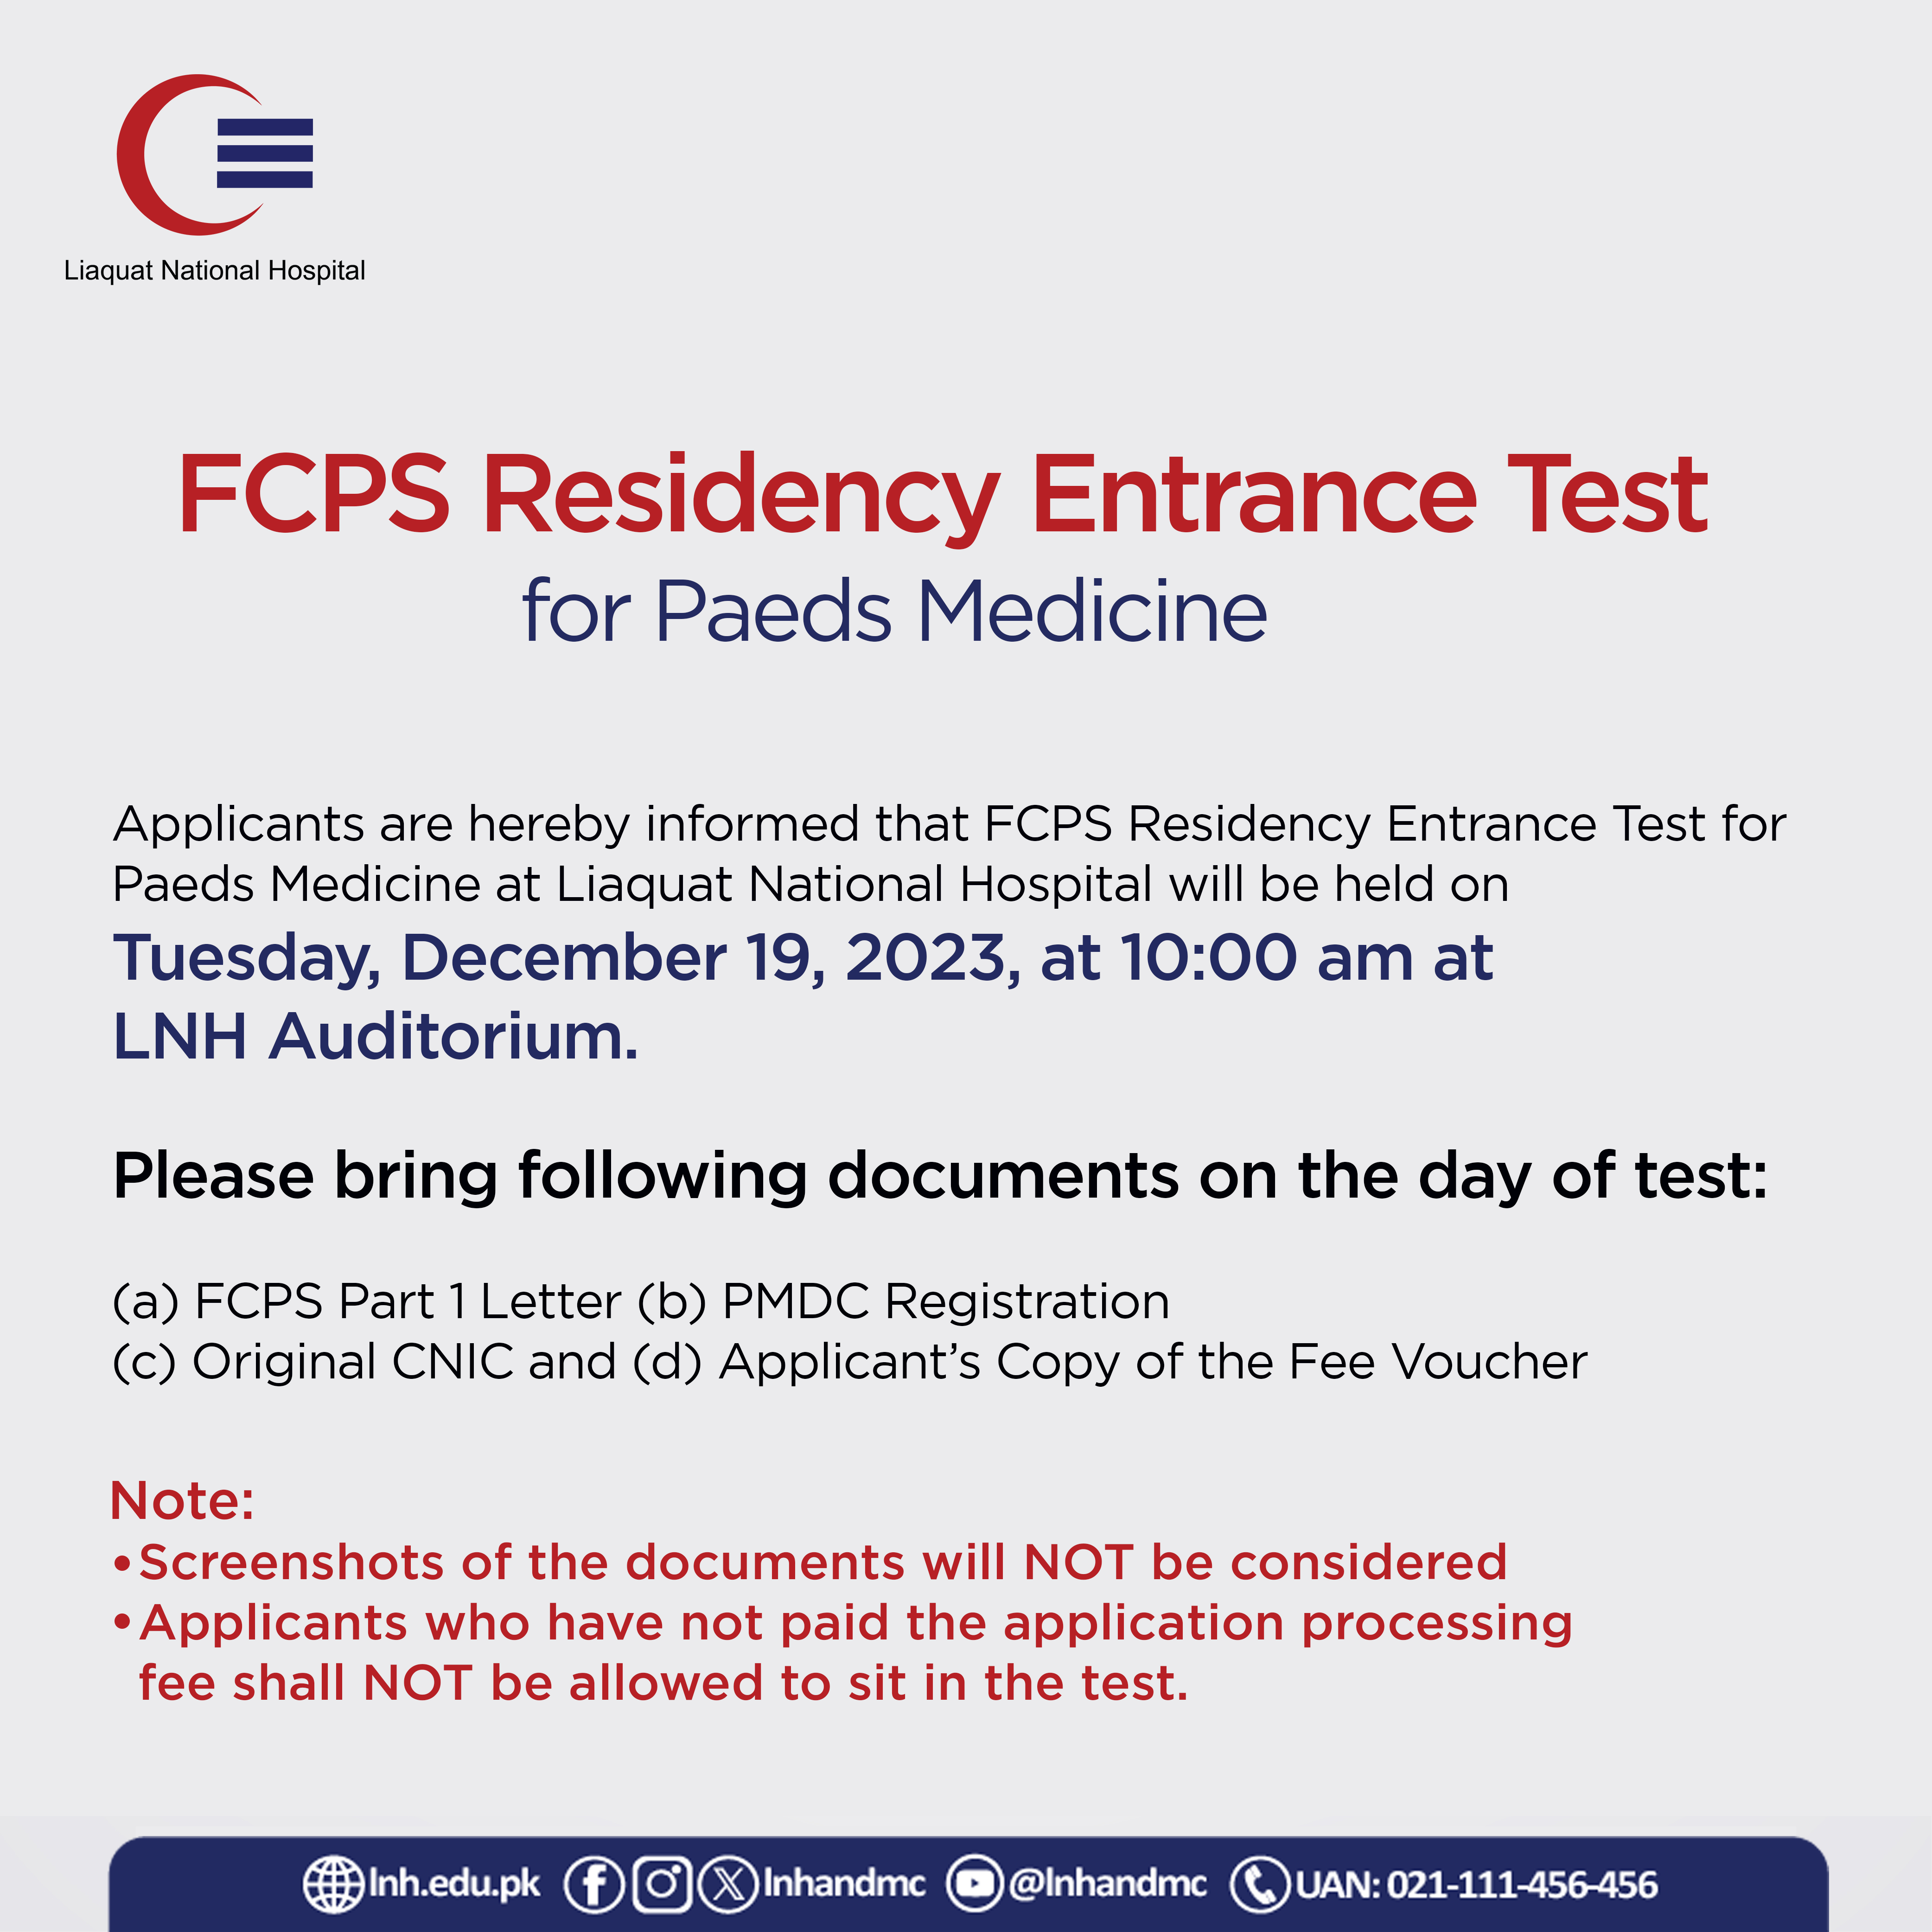 FCPS Residency Entrance Test for Paeds Medicine